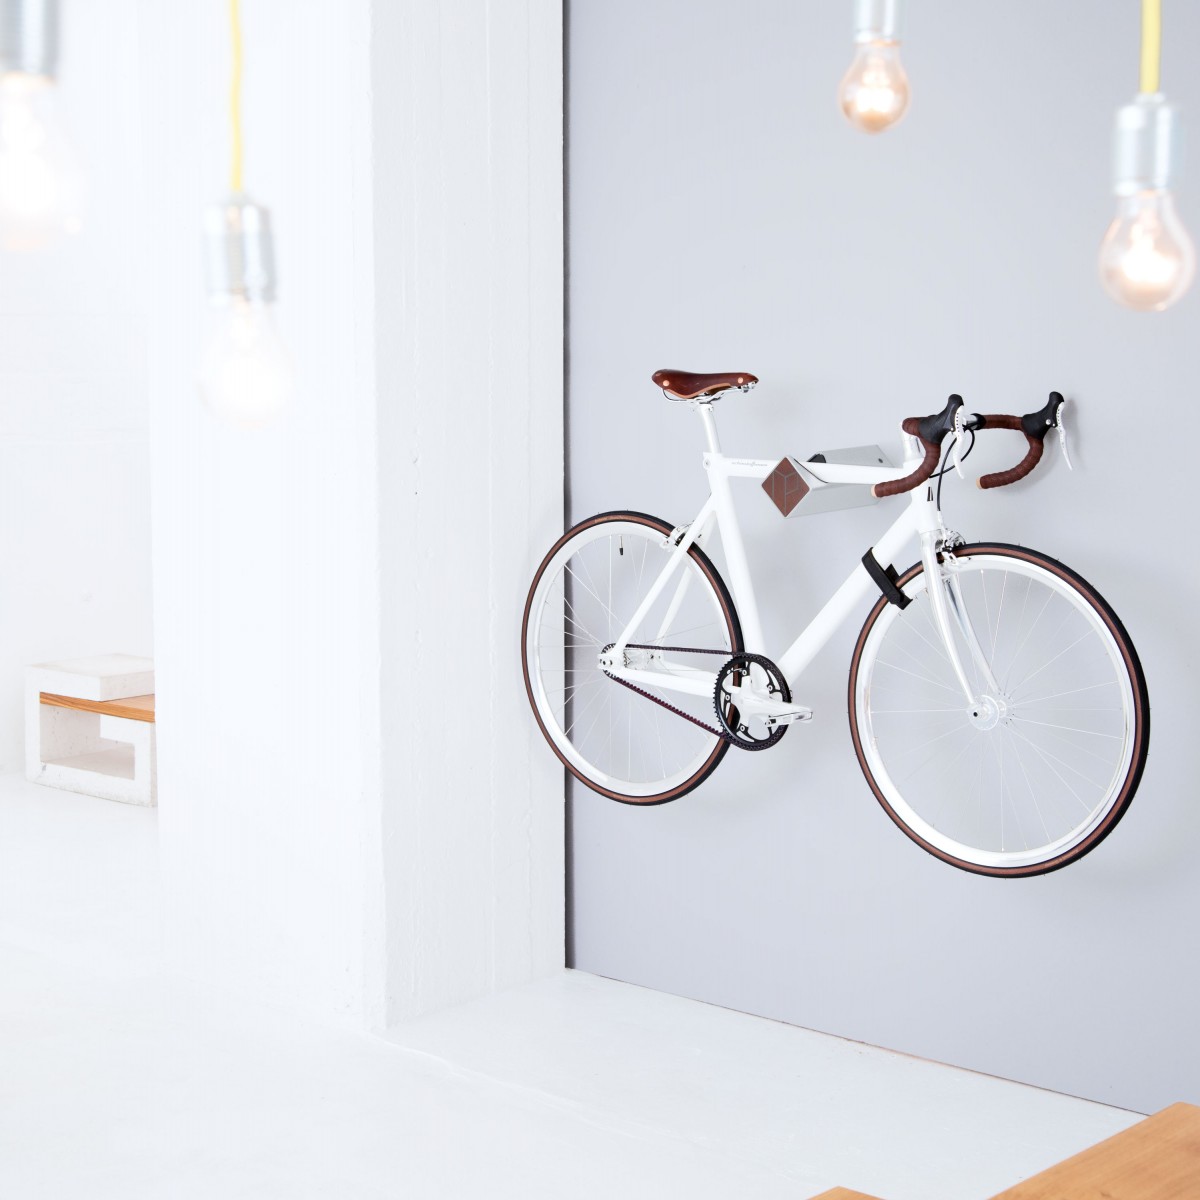 Stilvolle Design Fahrrad Wandhalterung | PARAX® D-RACK | für Rennrad, Hardtail, Cityrad & Tourenrad | Silber - Schwarz mit Kebony Holz